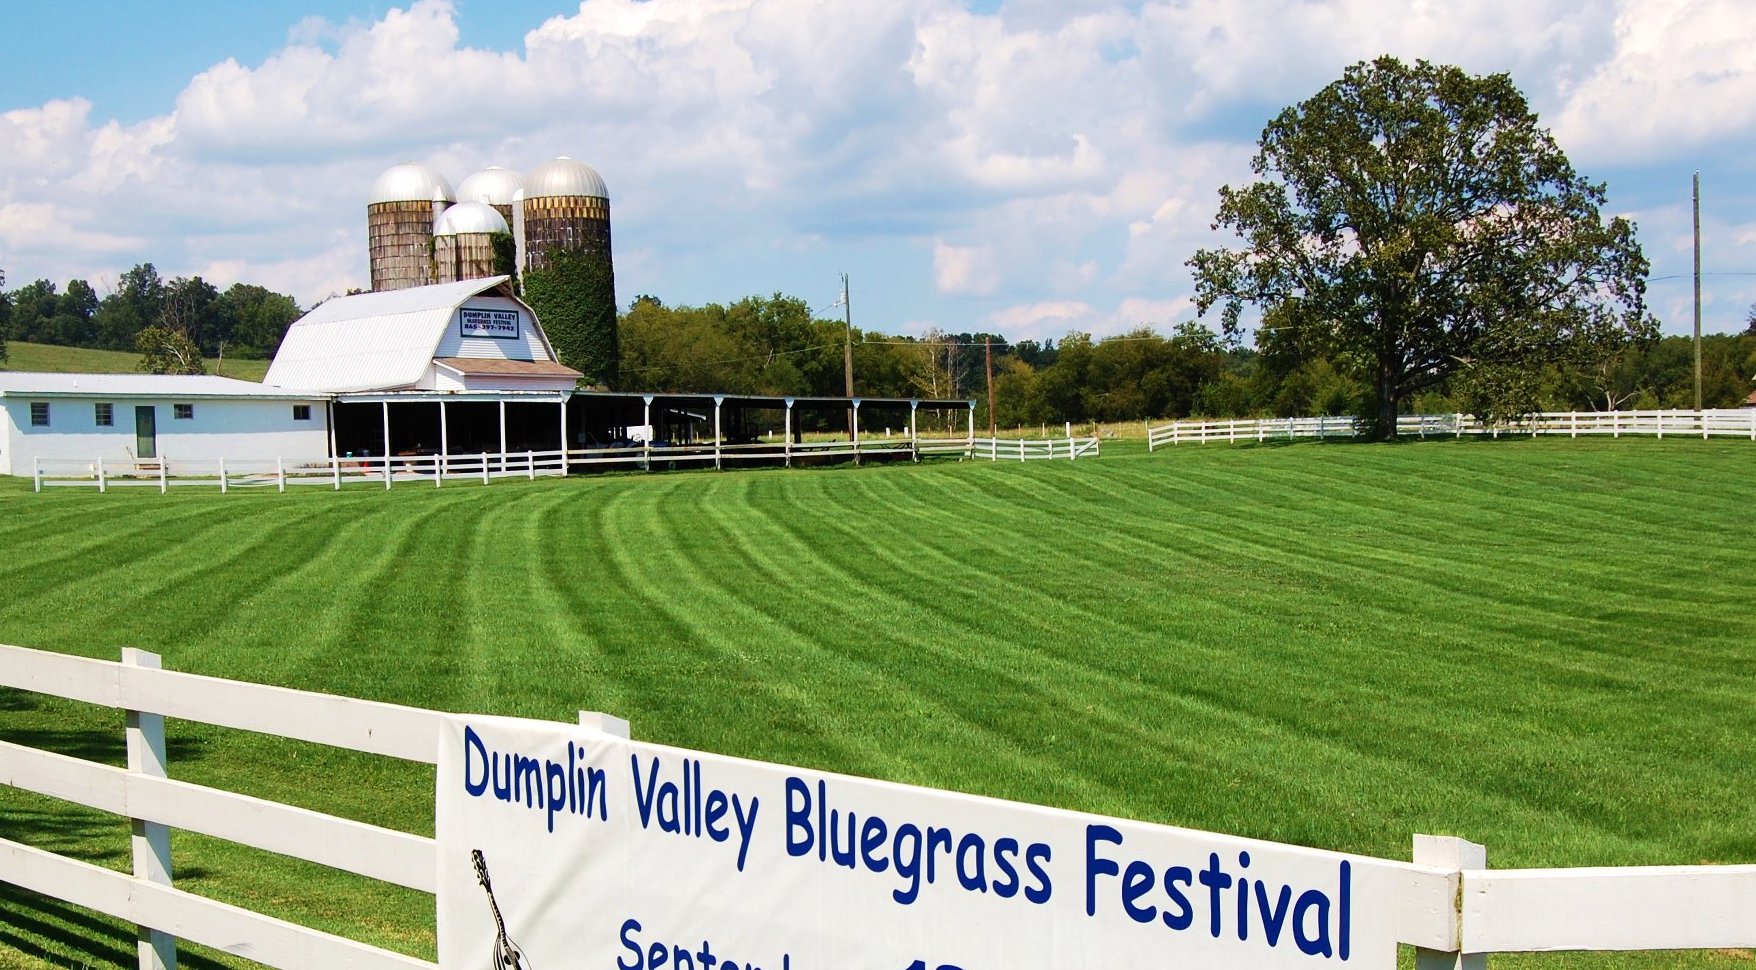 Dumplin Valley Bluegrass Festival: A Hidden Gem